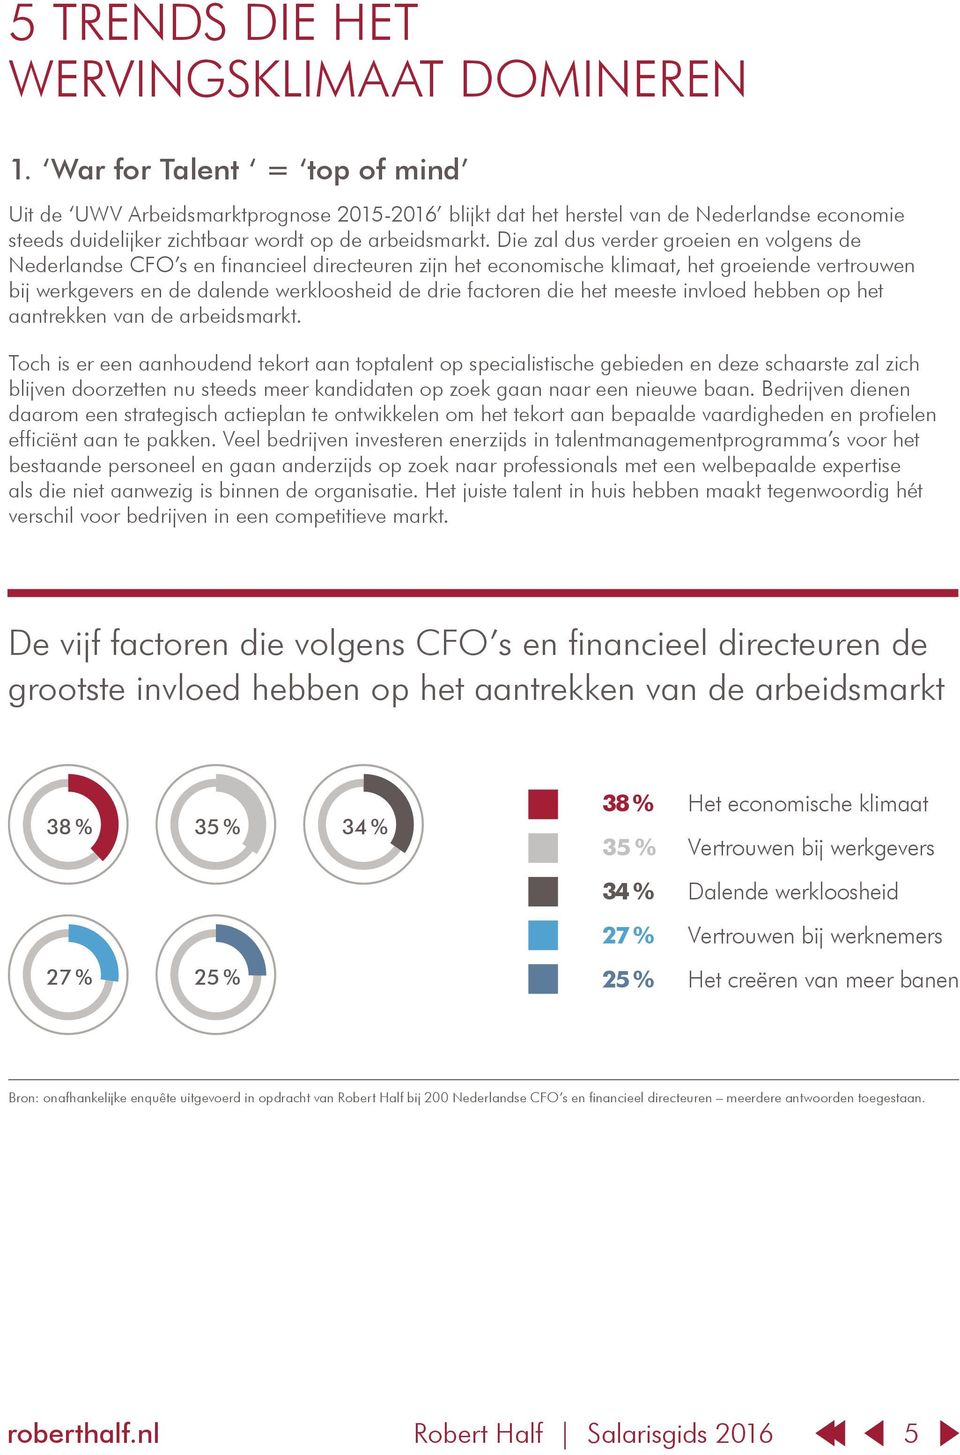 Die zal dus verder groeien en volgens de Nederlandse CFO s en financieel directeuren zijn het economische klimaat, het groeiende vertrouwen bij werkgevers en de dalende werkloosheid de drie factoren